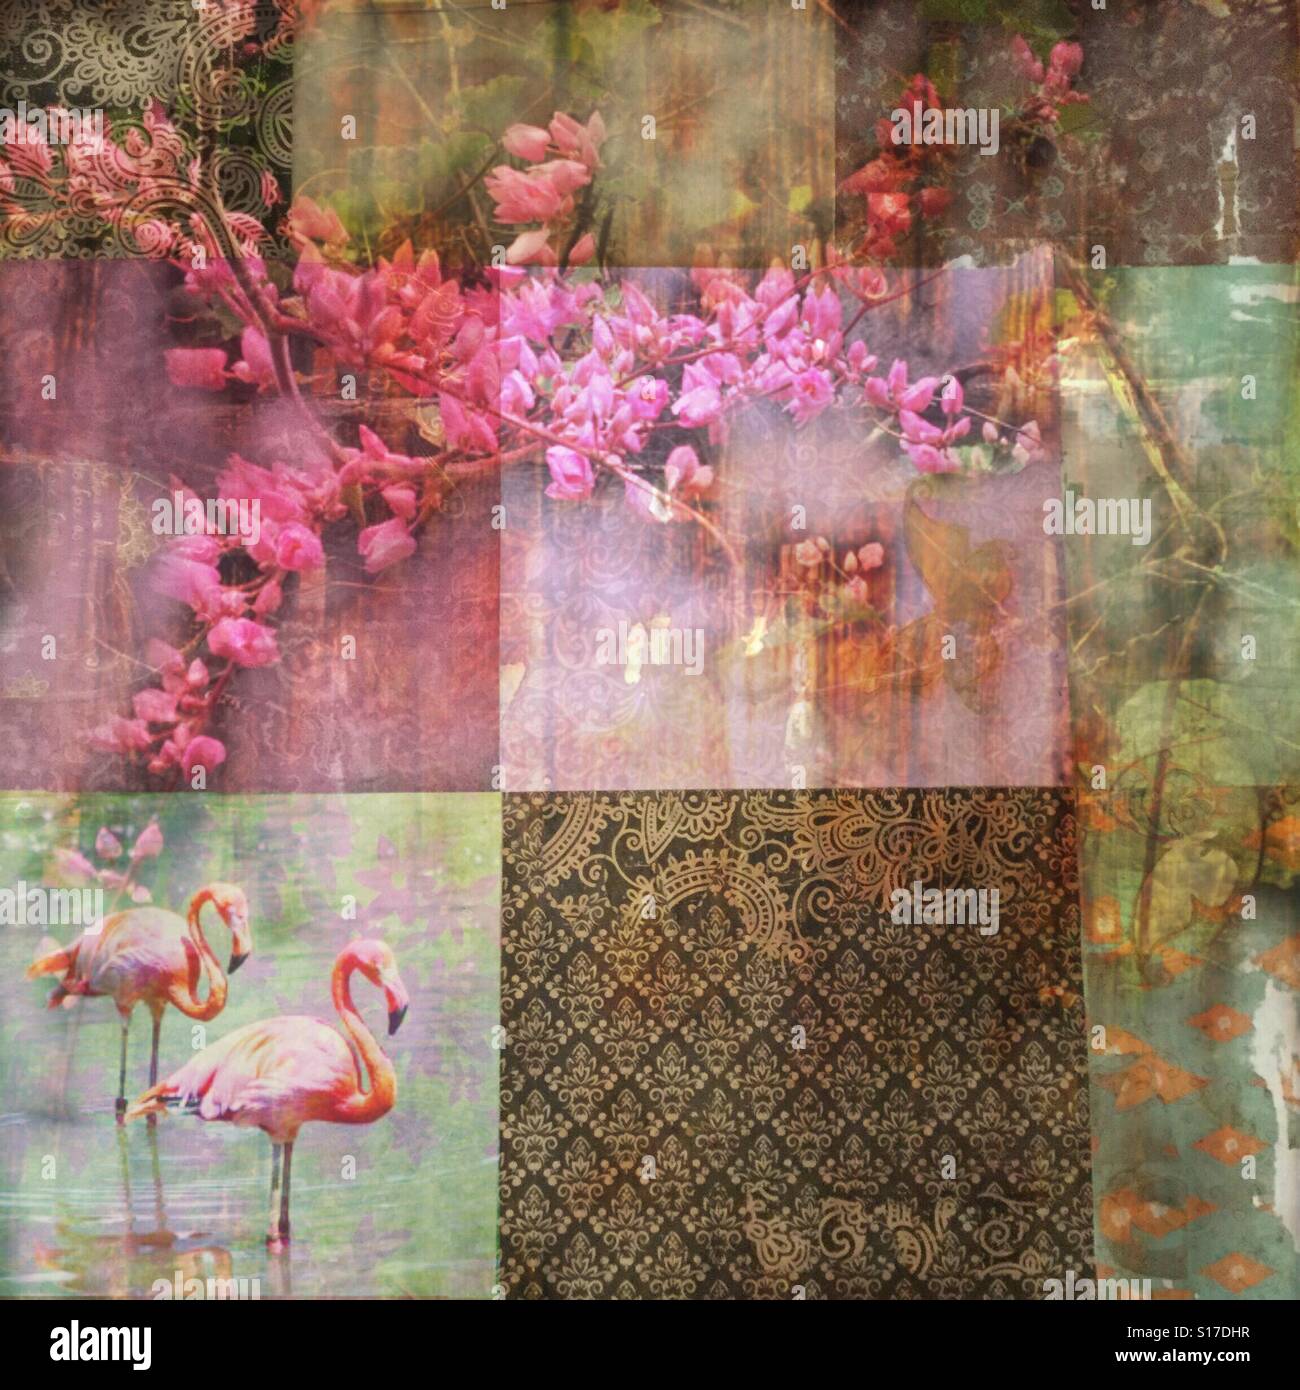 Boho Fantasy, Flamingo vigne, iPhone photo collage e gli effetti, patch dei modelli di lavoro, vitigni rosa fenicottero e illusione Foto Stock